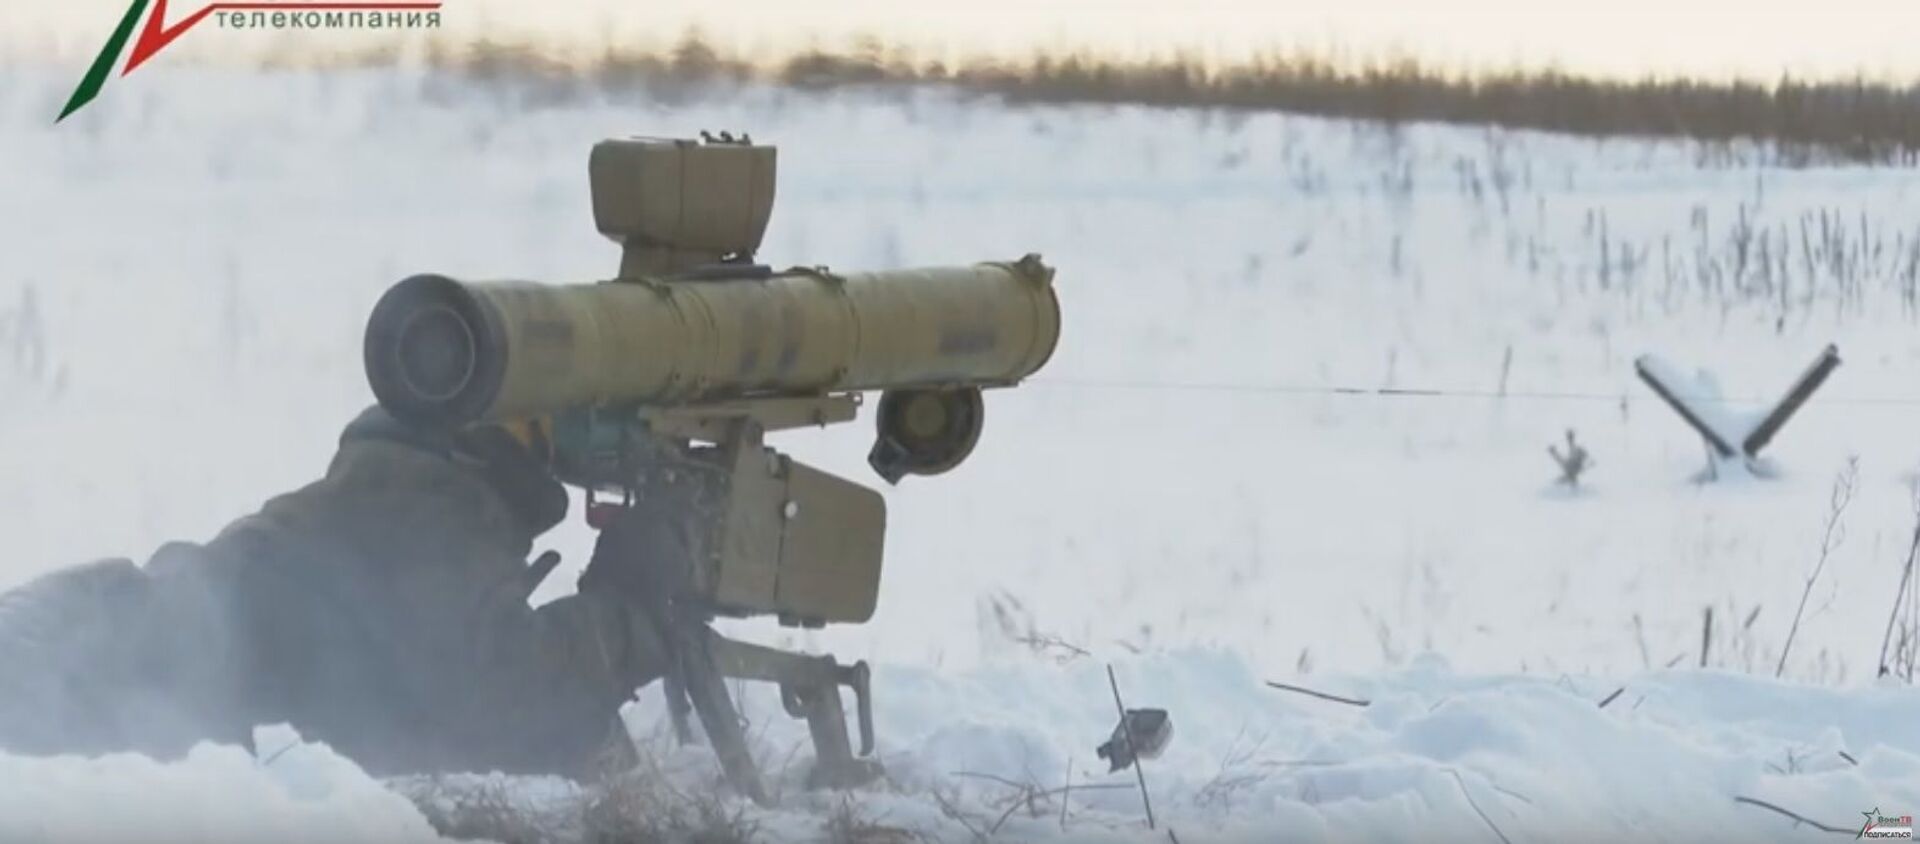 Как работают ПТУРы по бронетехнике – видео от военных - Sputnik Беларусь, 1920, 26.01.2021